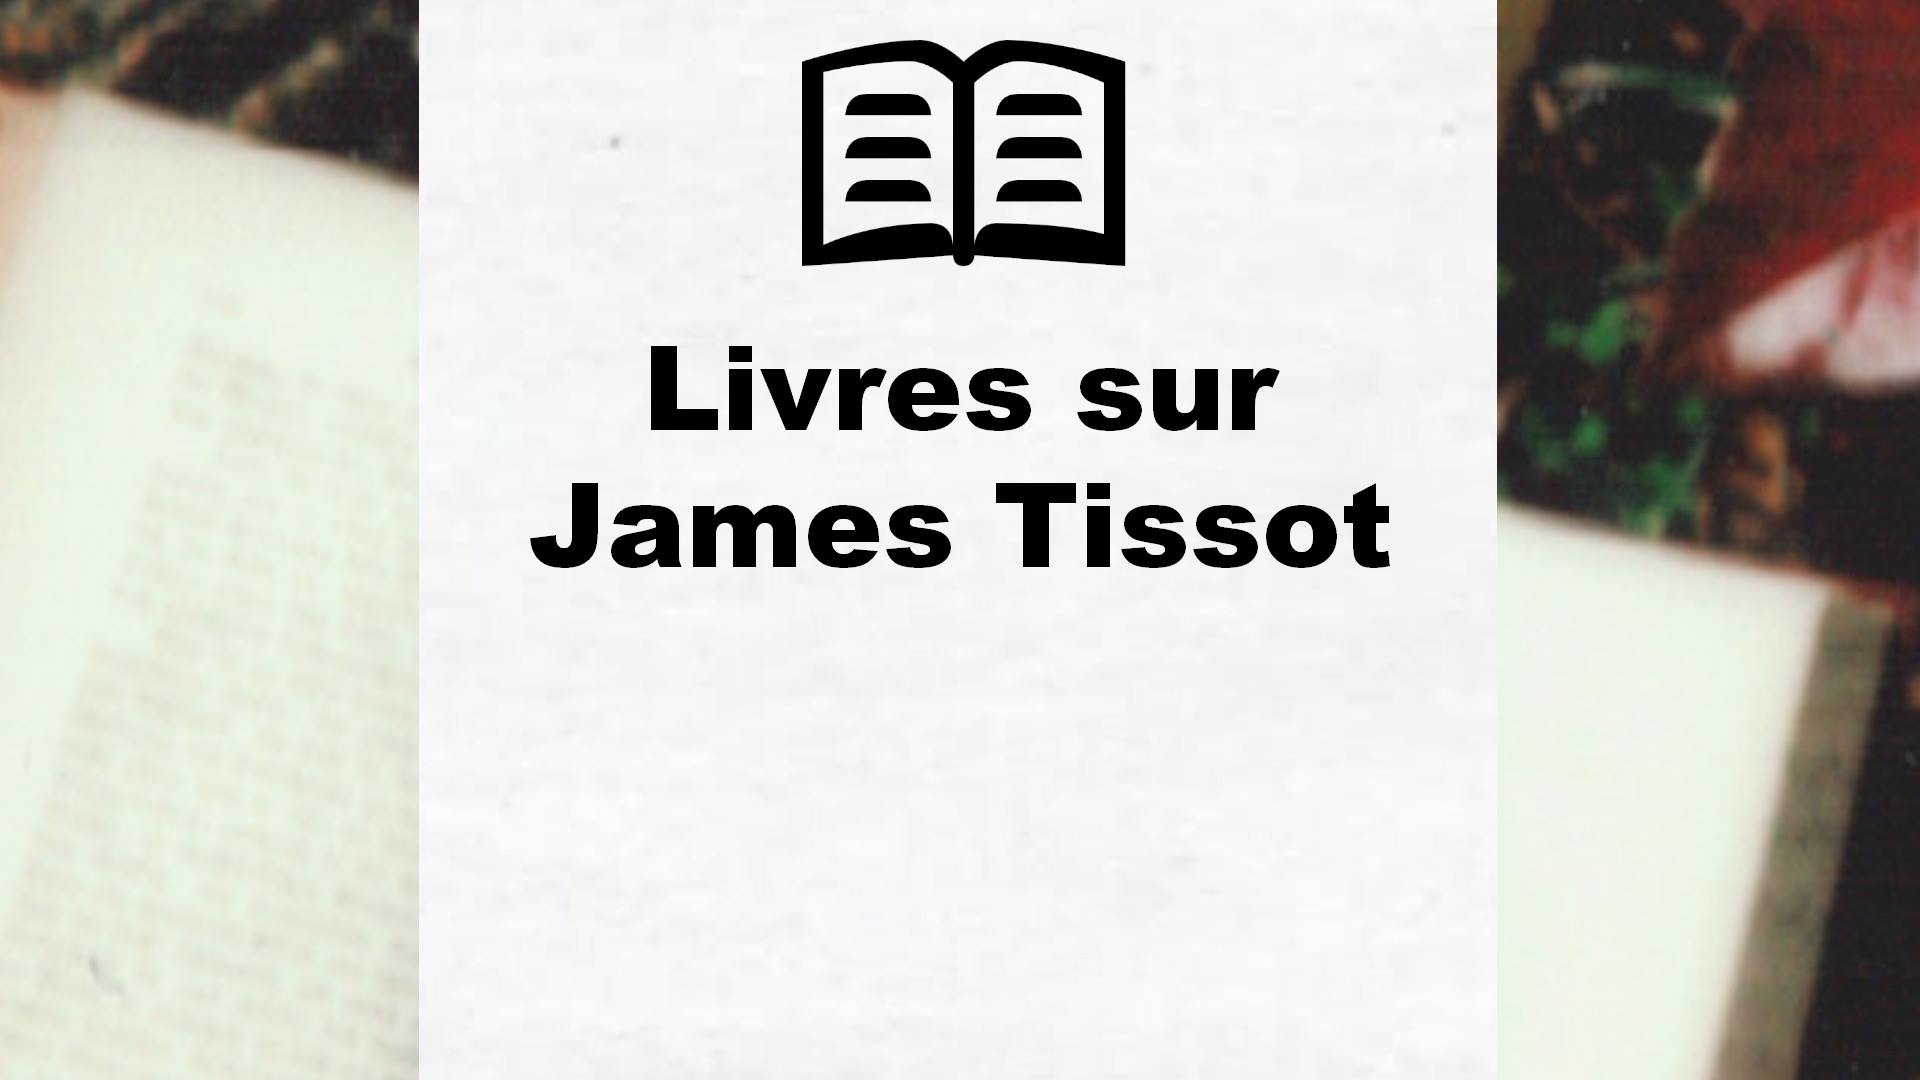 Livres sur James Tissot